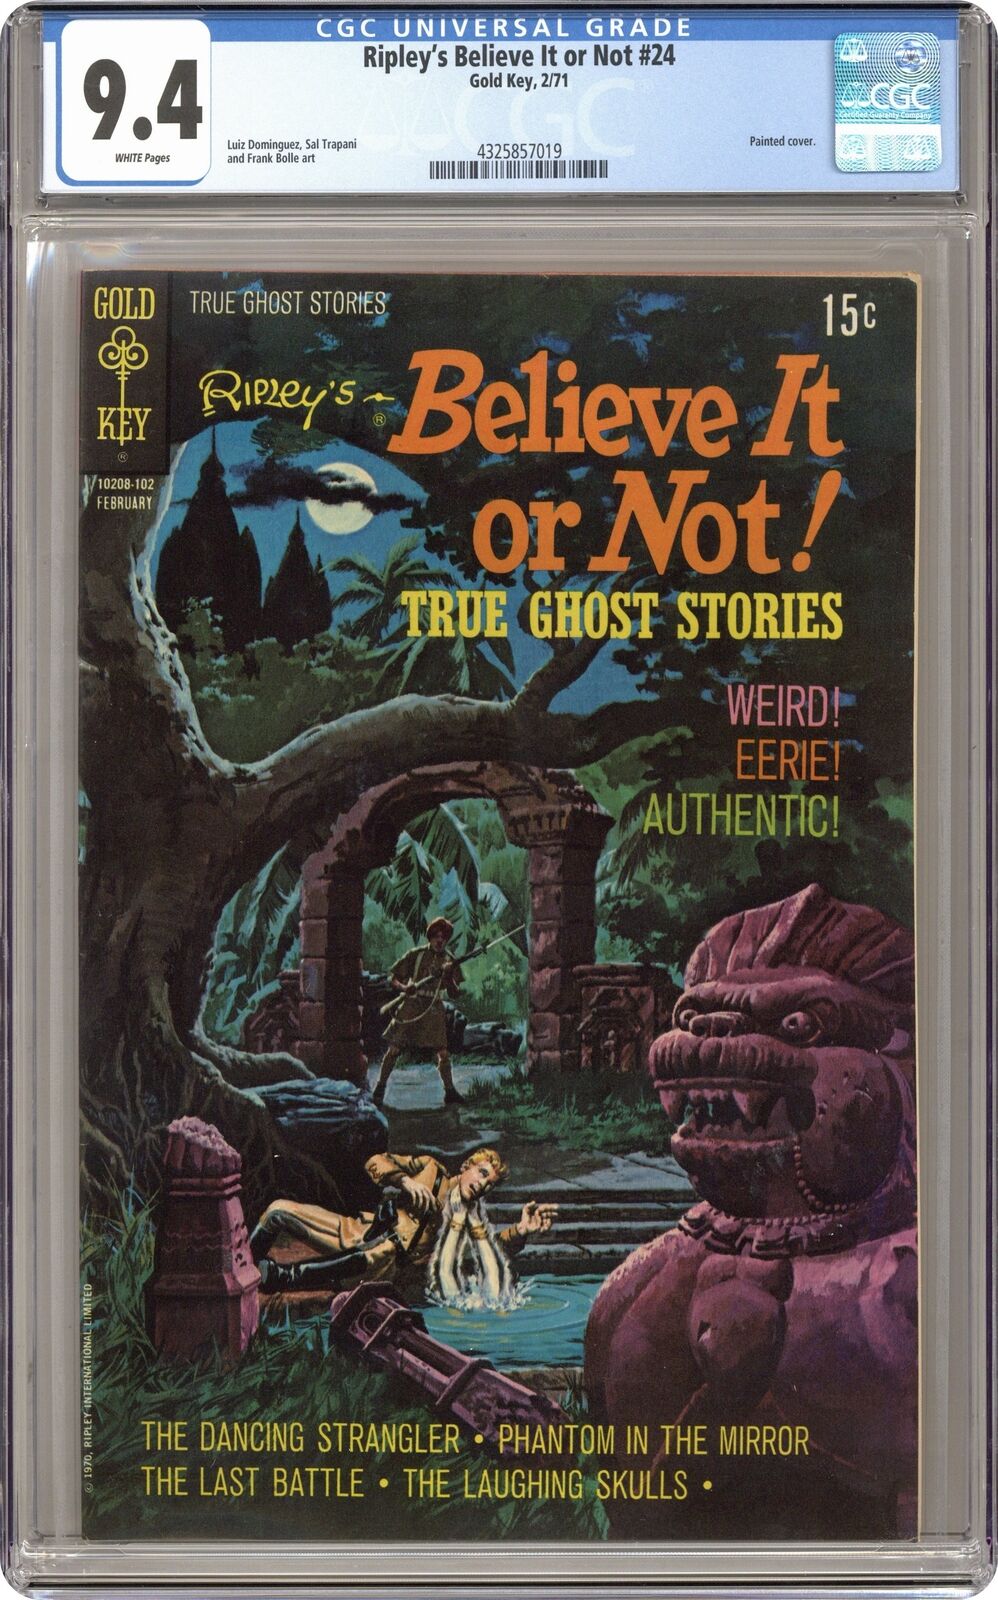 Ripley's Believe It or Not #24 CGC 9.4 1971 Gold Key 4325857019